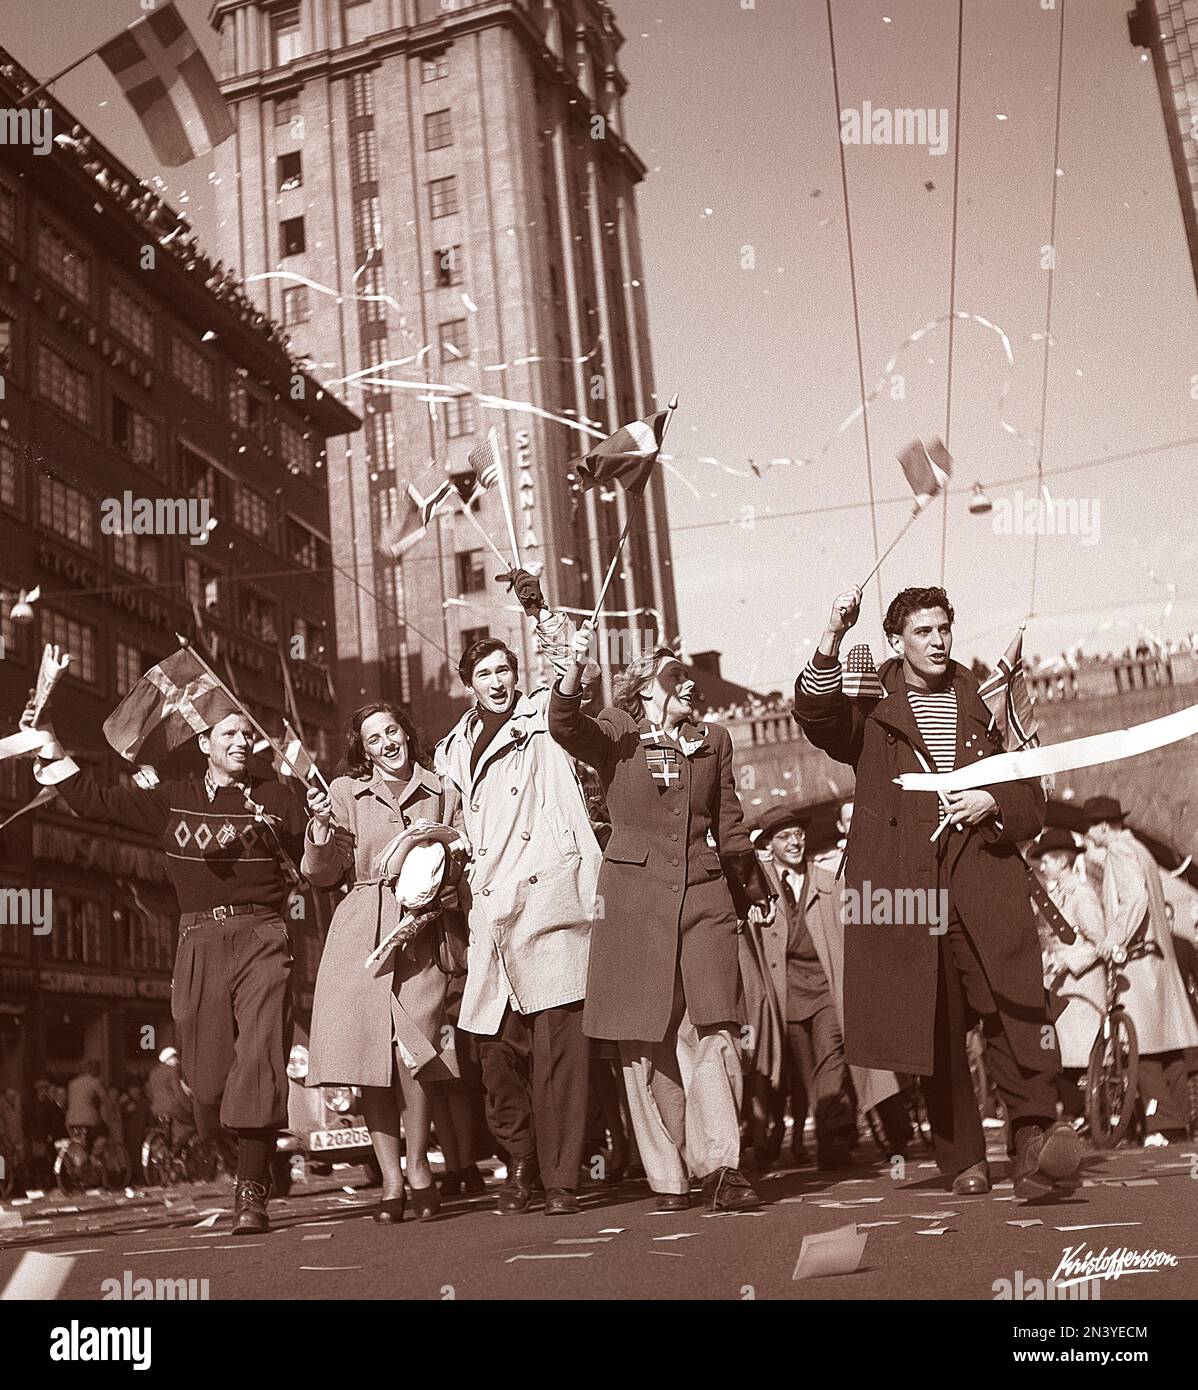 Celebrazione della pace 1945. I cittadini di Stoccolma celebrano la fine della seconda guerra mondiale Gli uomini e le donne vengono raffigurati camminando su Kungsgatan il giorno in cui la pace è stata proclamata in Europa Svezia il 7 1945s maggio. Foto Kristoffersson N128-2 Foto Stock